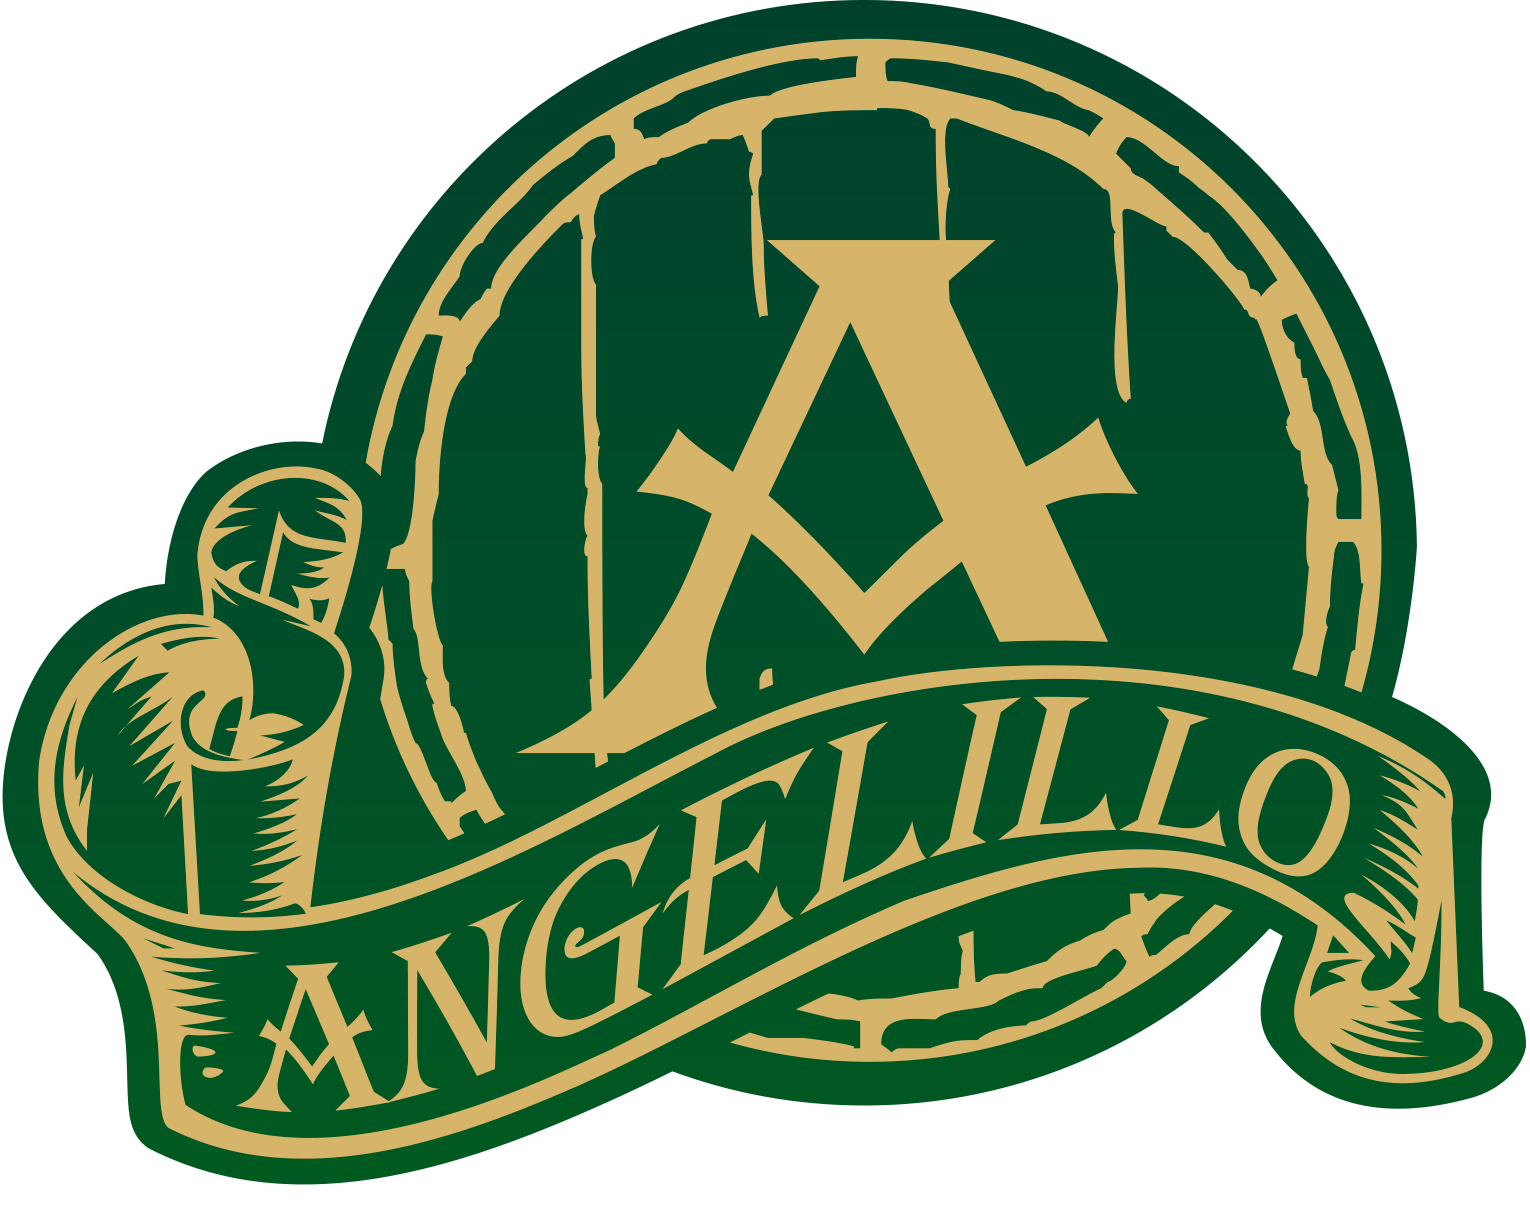 Cervecería Angelillo